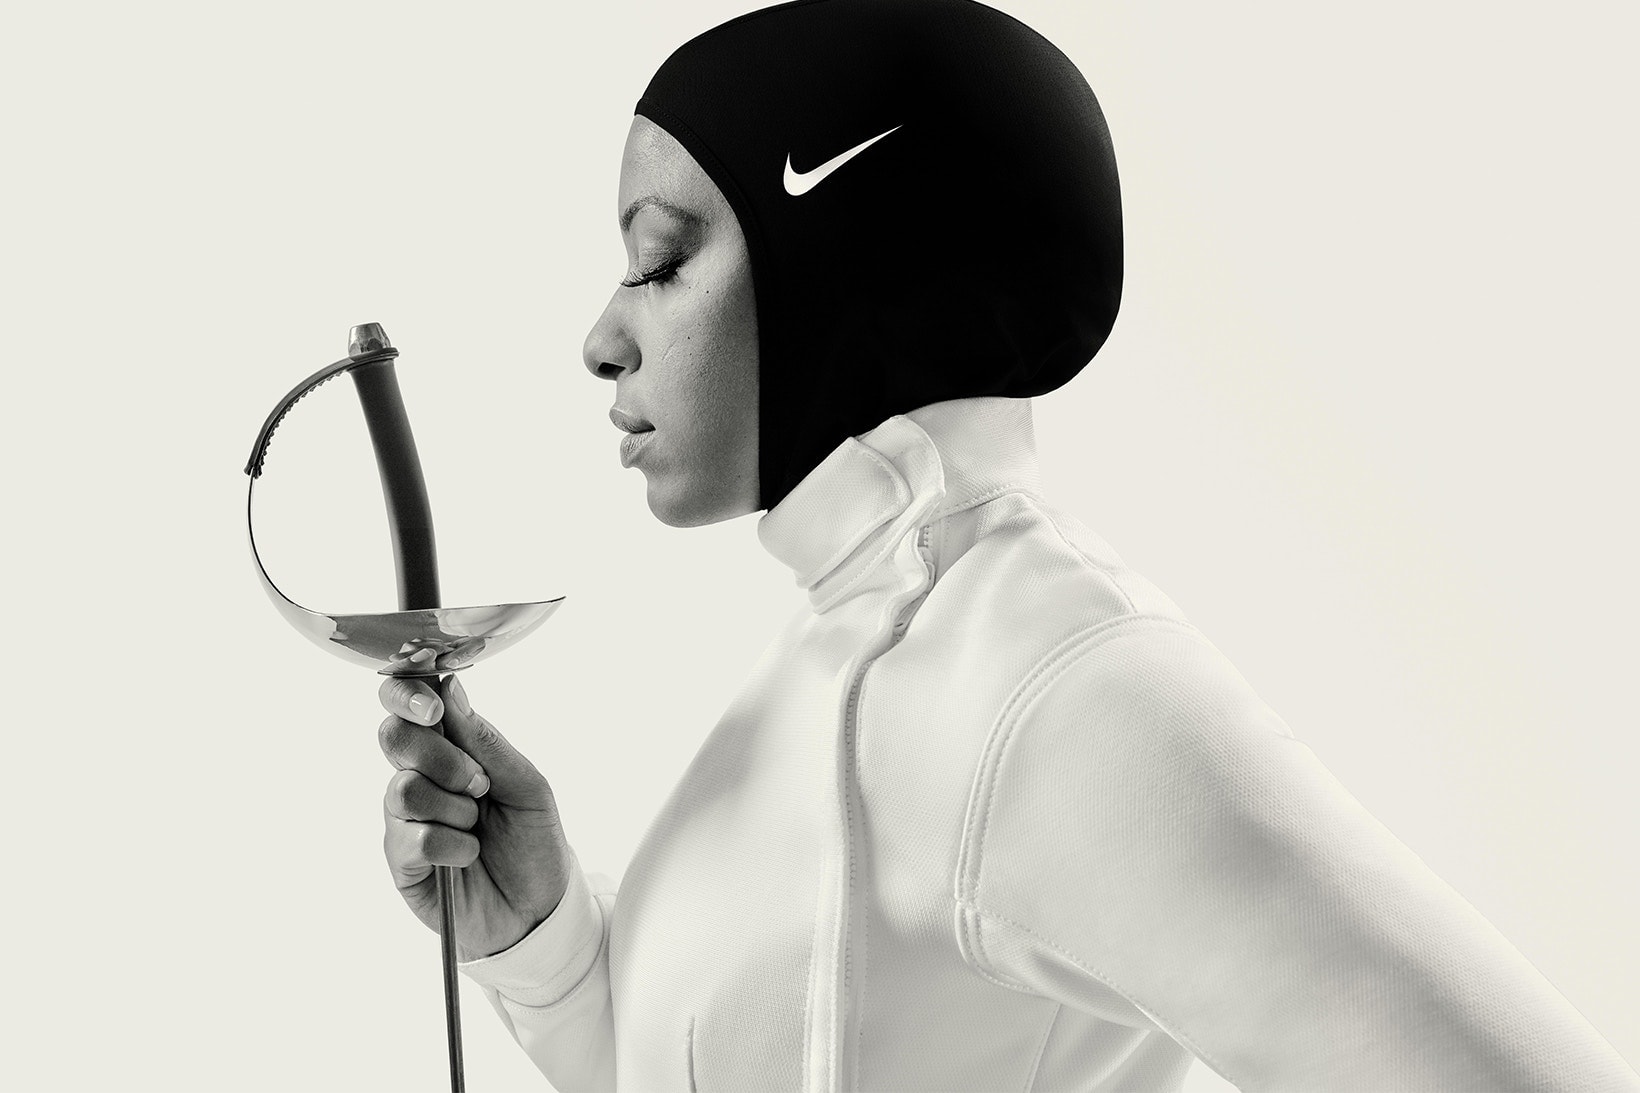 Nike より ムスリム女性のための Pro Hijab が遂にデリバリースタート 誰しもが最高のパフォーマンスを発揮できるスポーツ環境を目指した〈Nike〉の粋な計らいに全世界が注目中